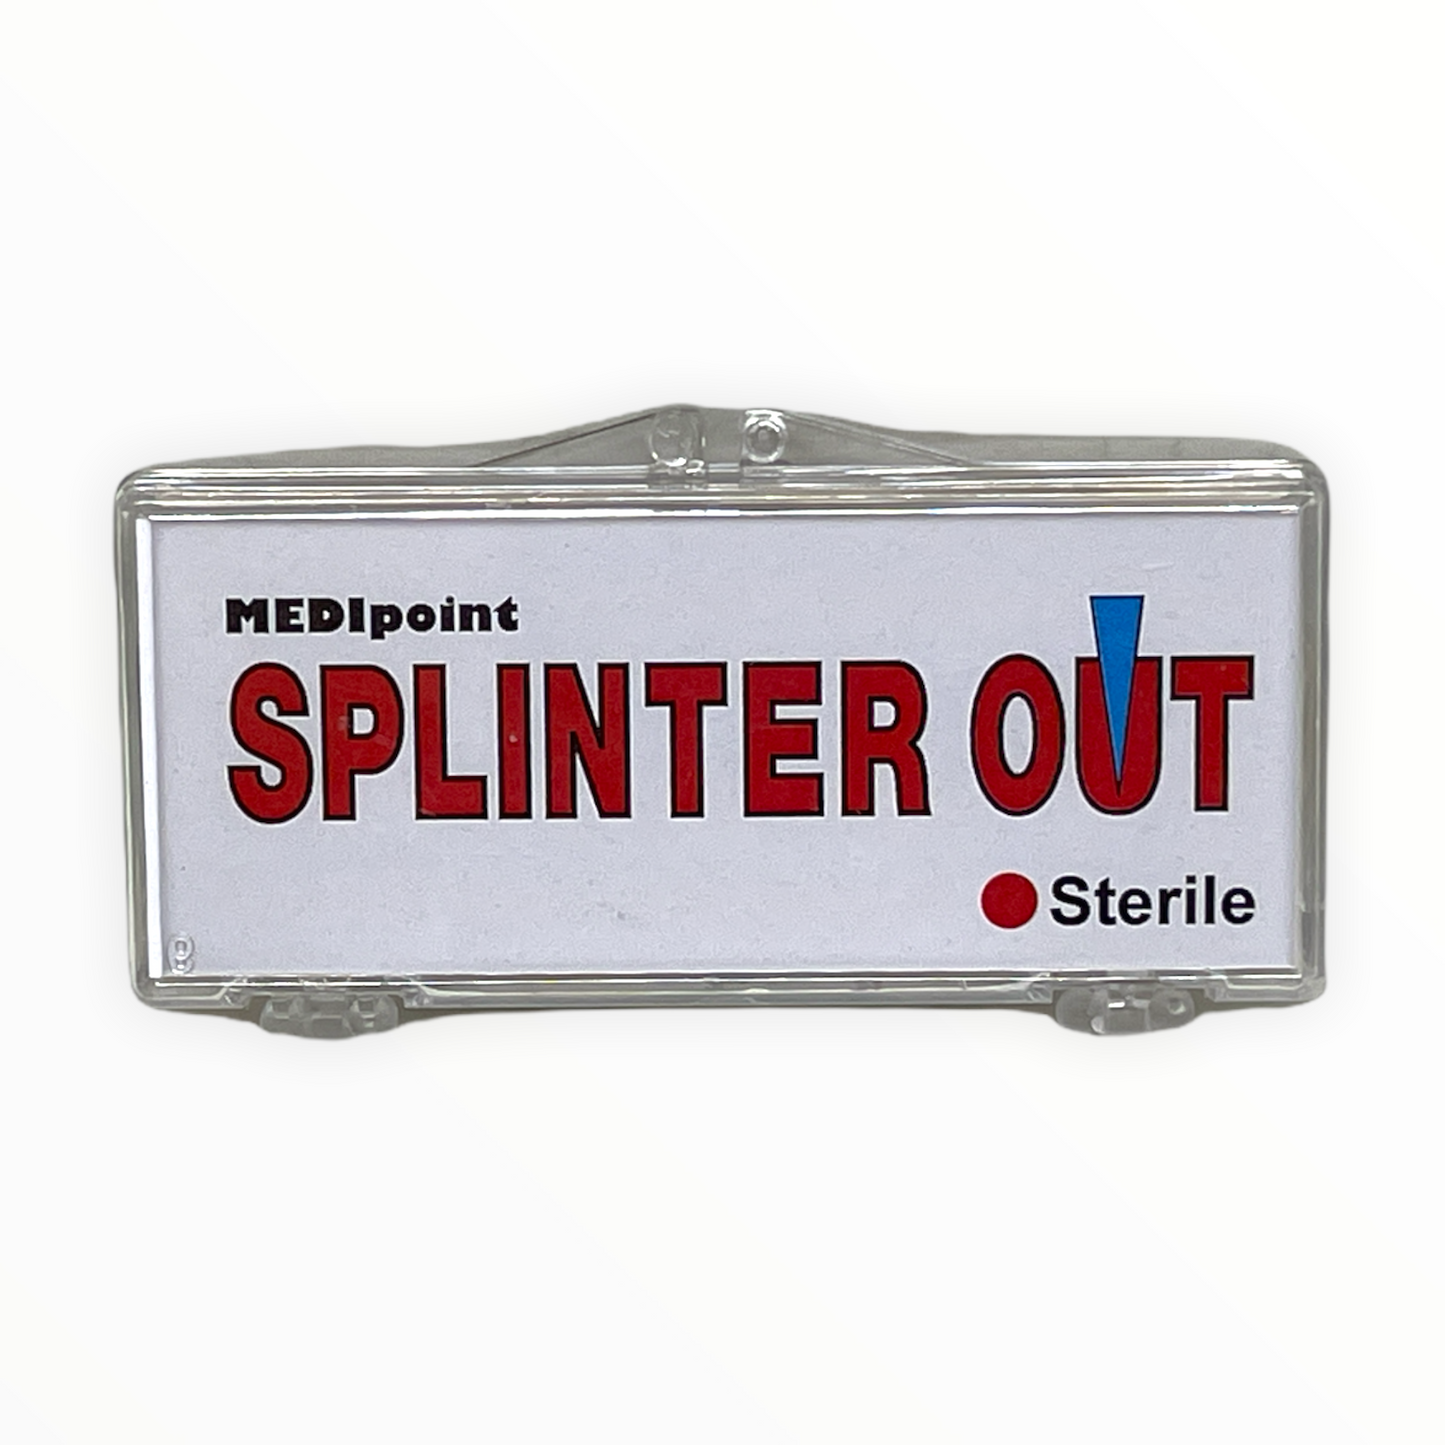 Splinter Out Splinter Remover First Aid Survival Kit Blood Lancet - 10/Box (10 PKG)